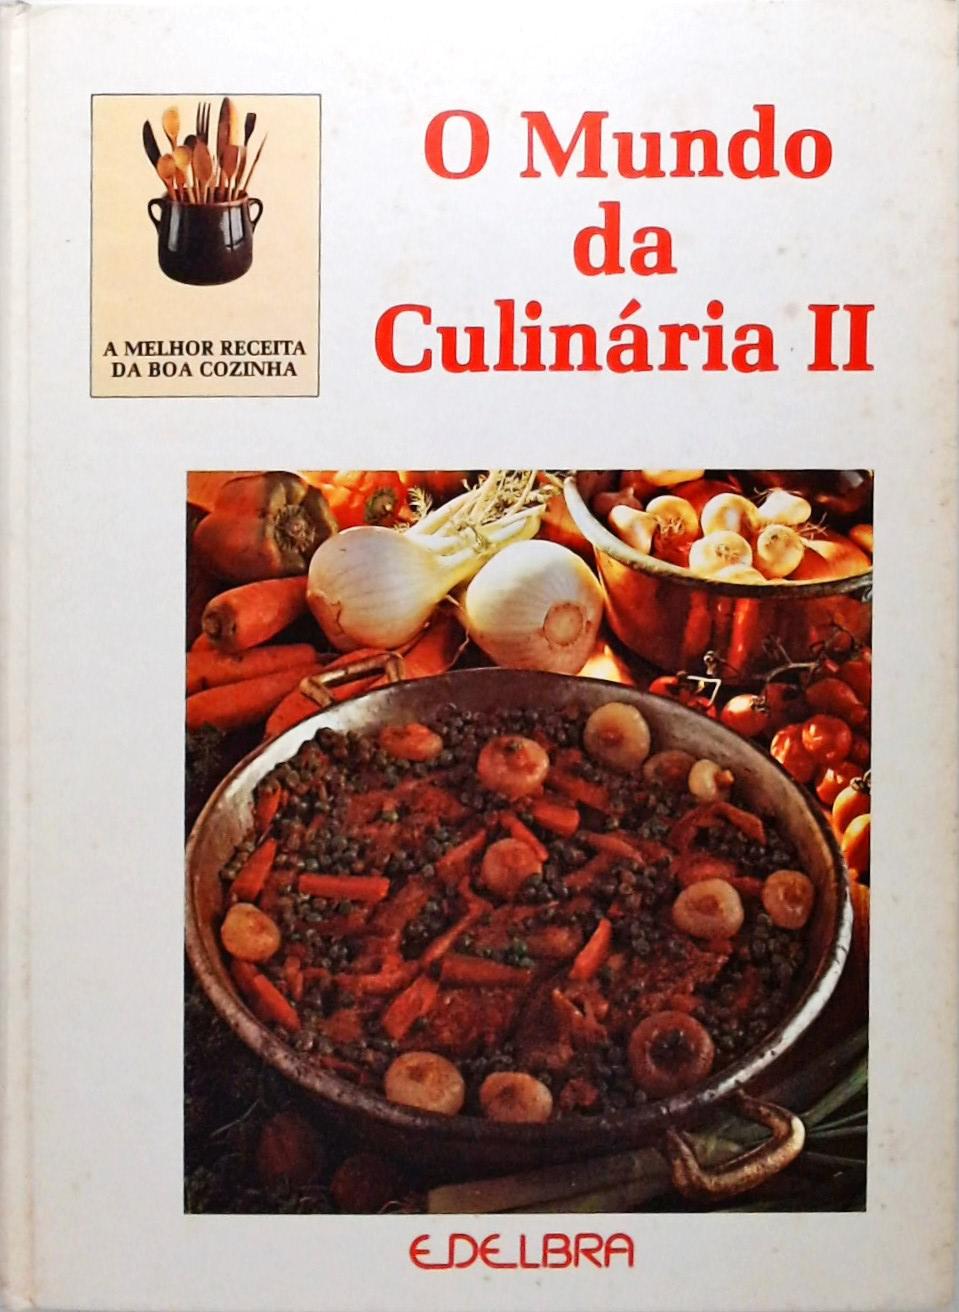 O Mundo da Culinaria II - 3 volumes